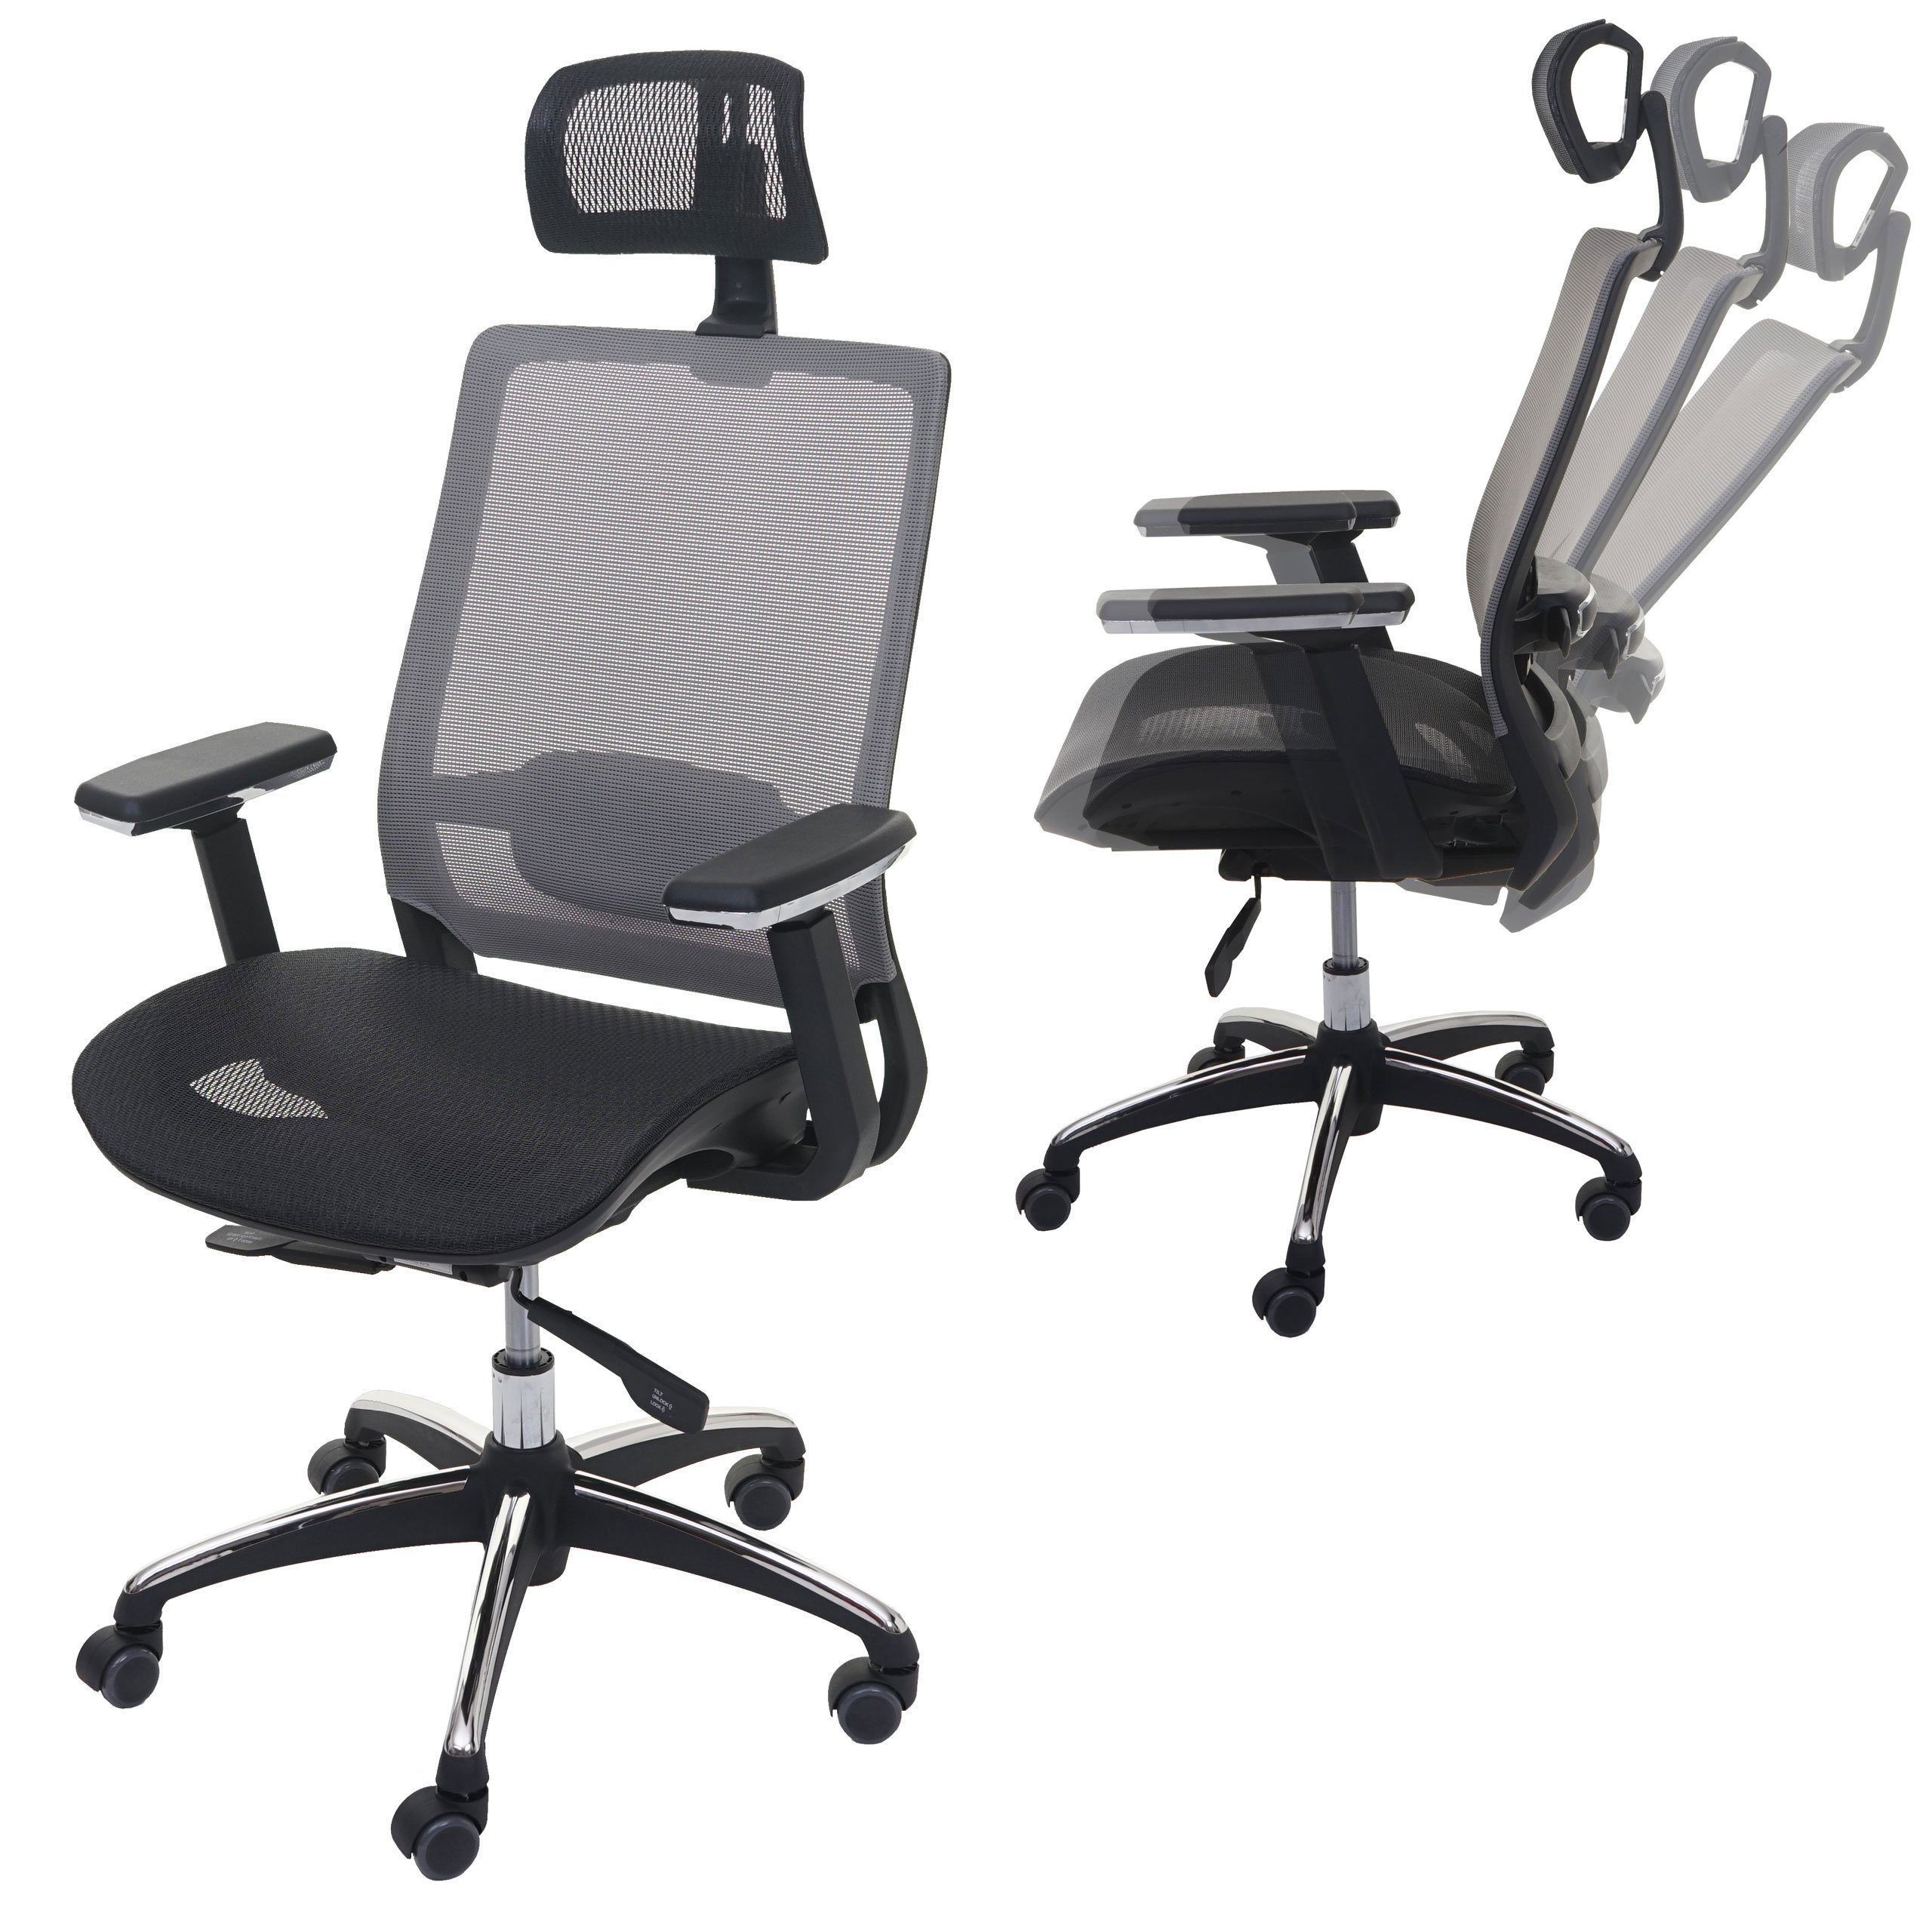 MCW Schreibtischstuhl MCW-A20, In der Tiefe verstellbare Sitzfläche, Lendenwirbelstütze anpassbar schwarz-grau